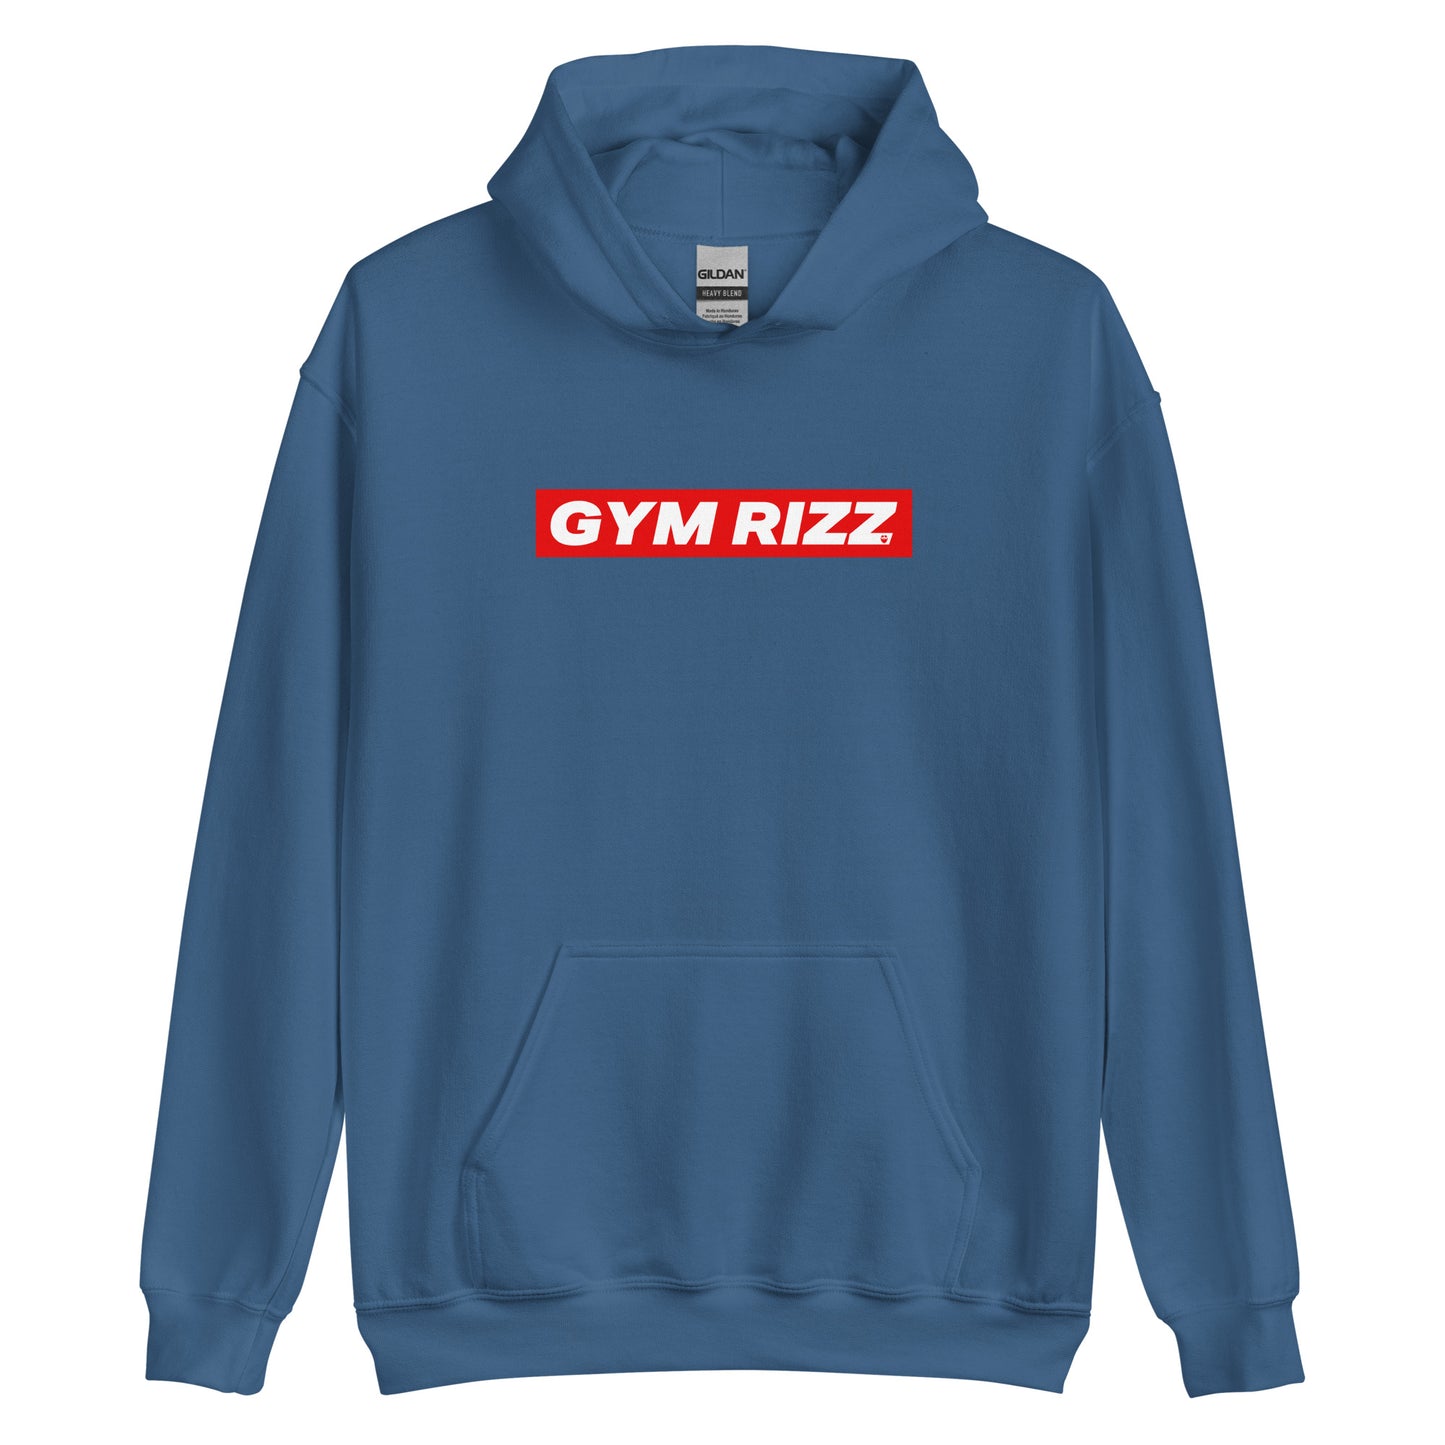 Gym Rizz Hoodie